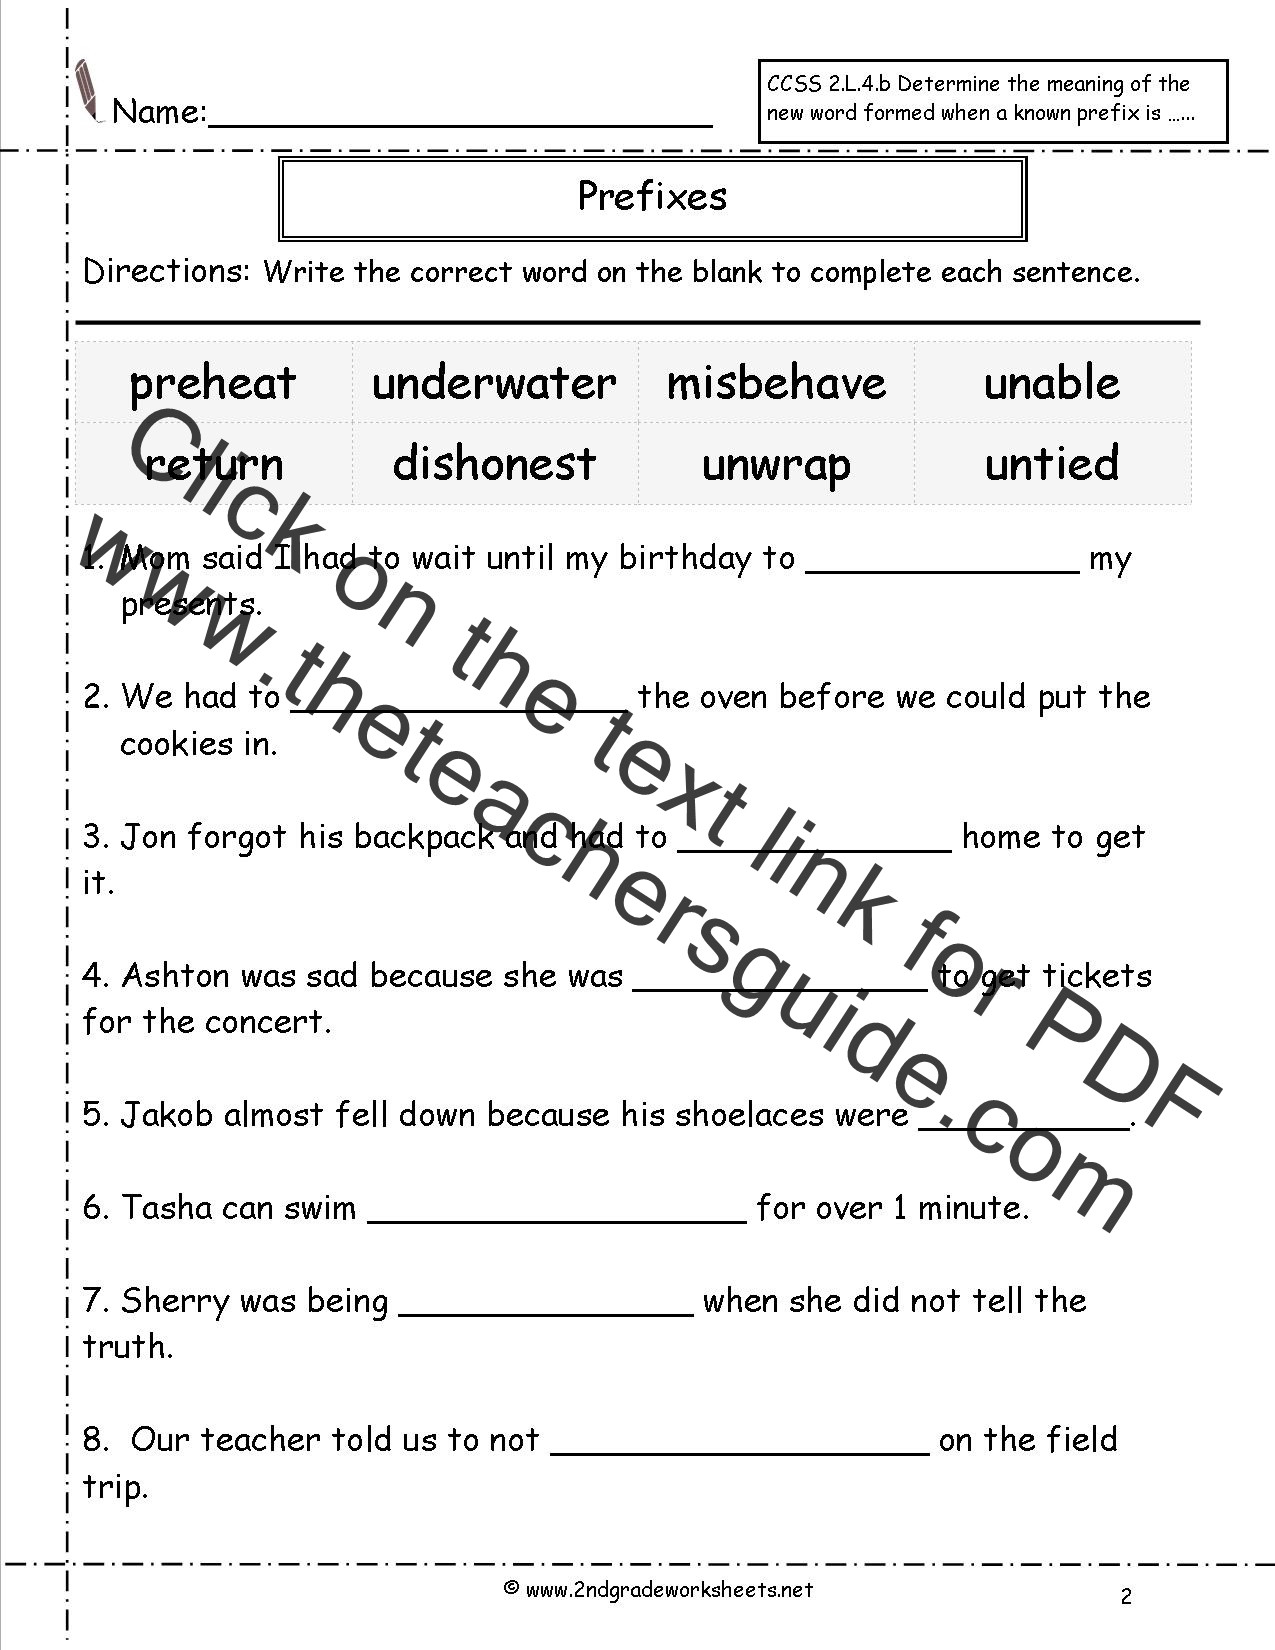 Prefixes and Suffixes Worksheet Second Grade Prefixes Worksheets